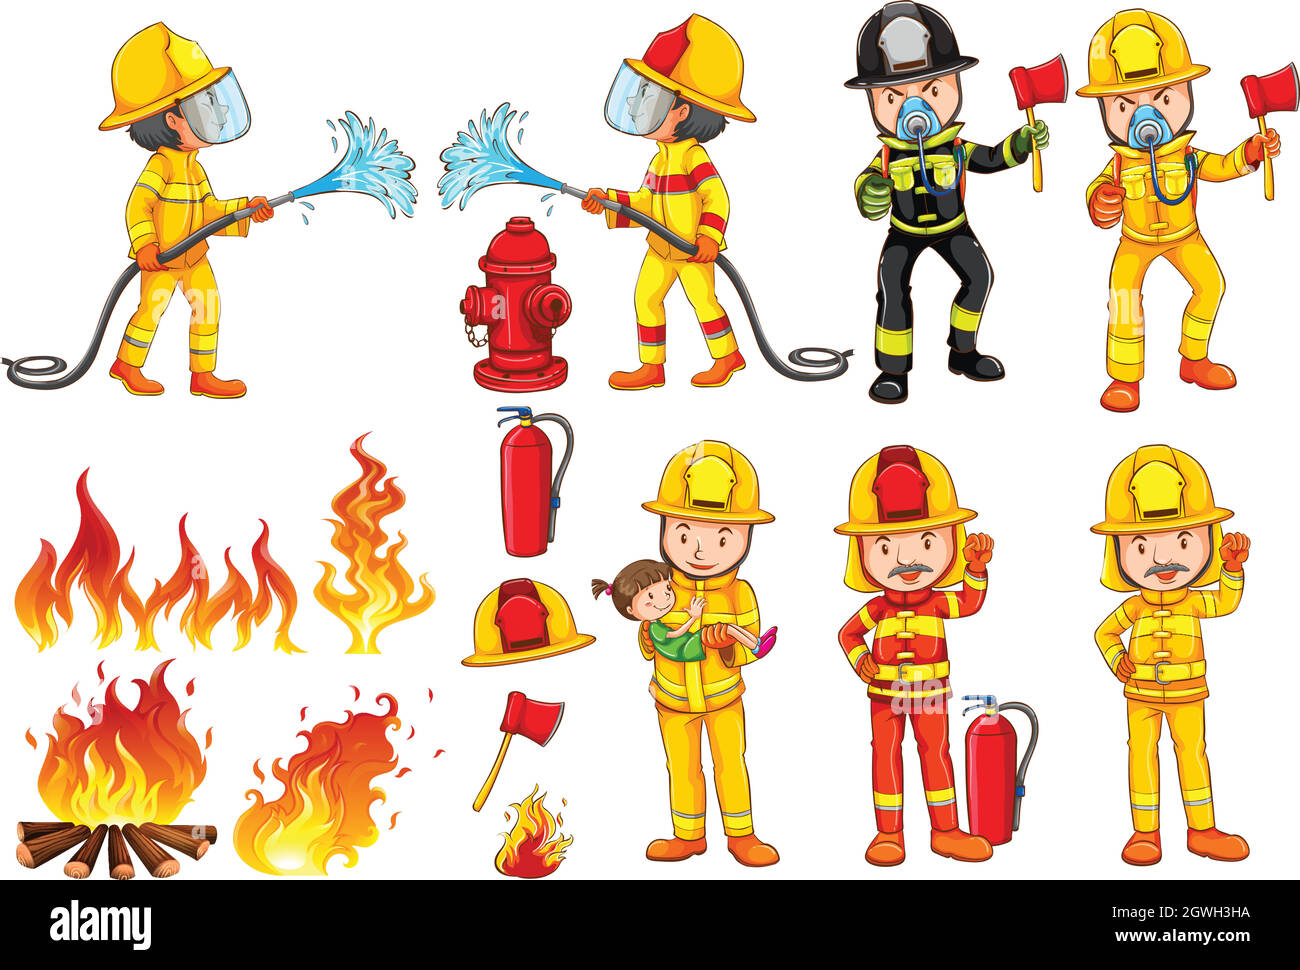 Фигурки пожарного для вырезания